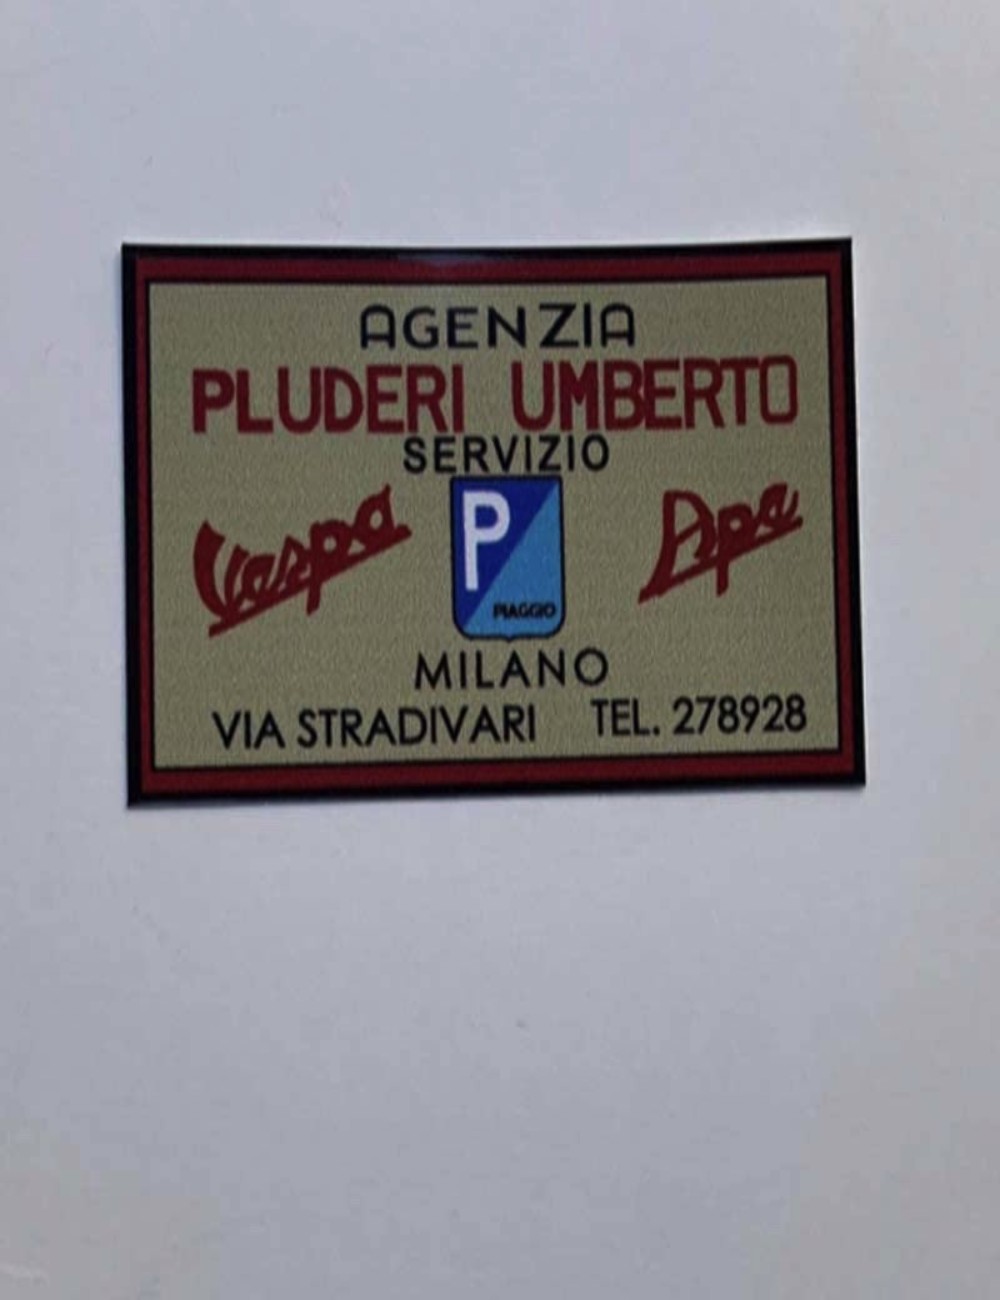 Adesivo concessionario Pluderi Umberto. Dimensioni 5,5cm x3,2 cm